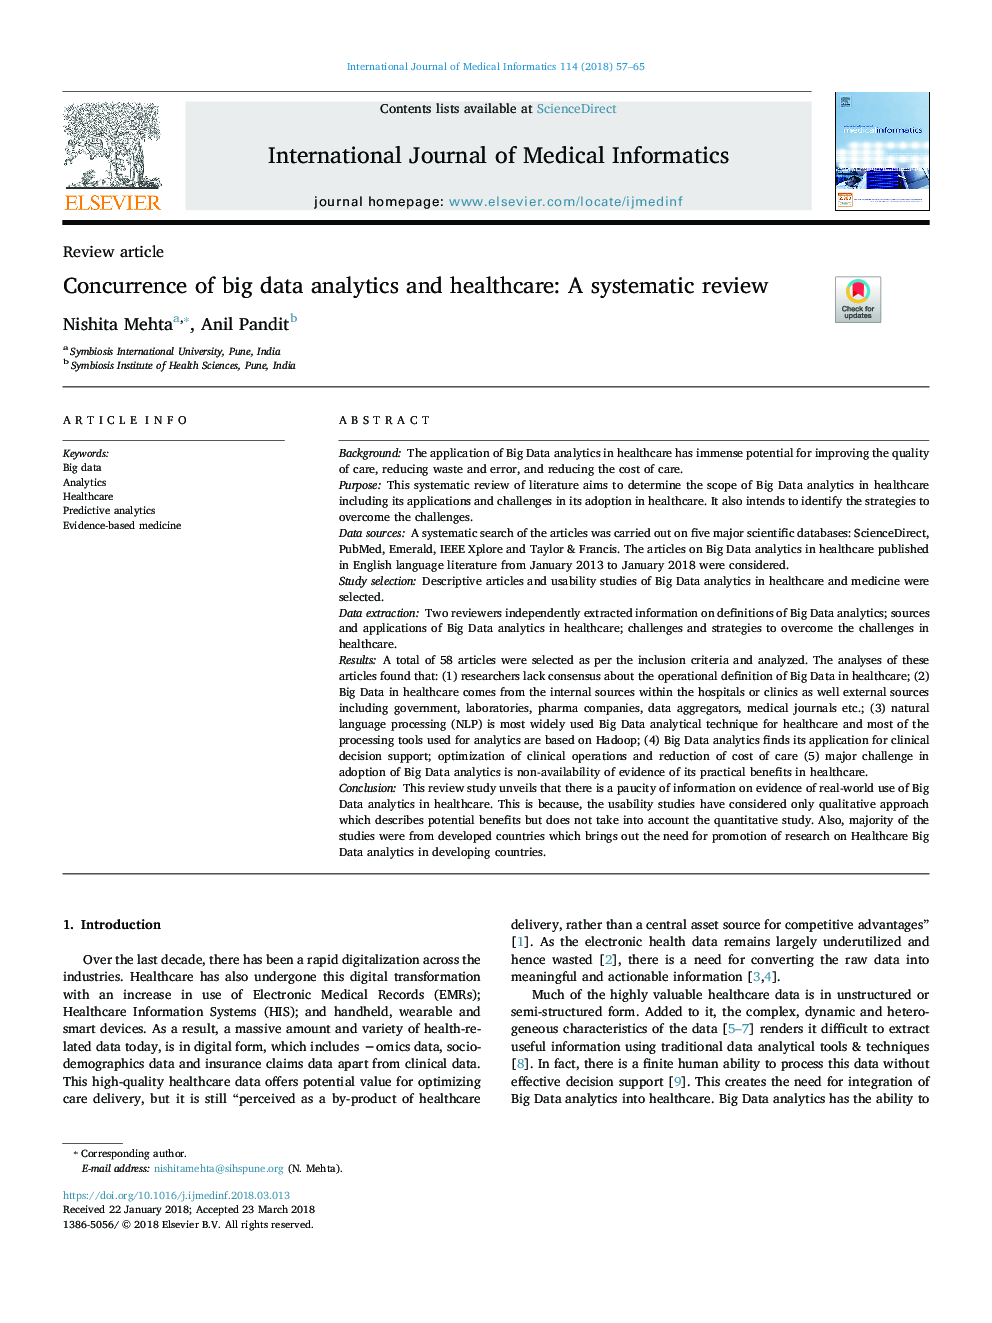 انطباق با تجزیه و تحلیل داده های بزرگ و مراقبت های بهداشتی: بررسی سیستماتیک 